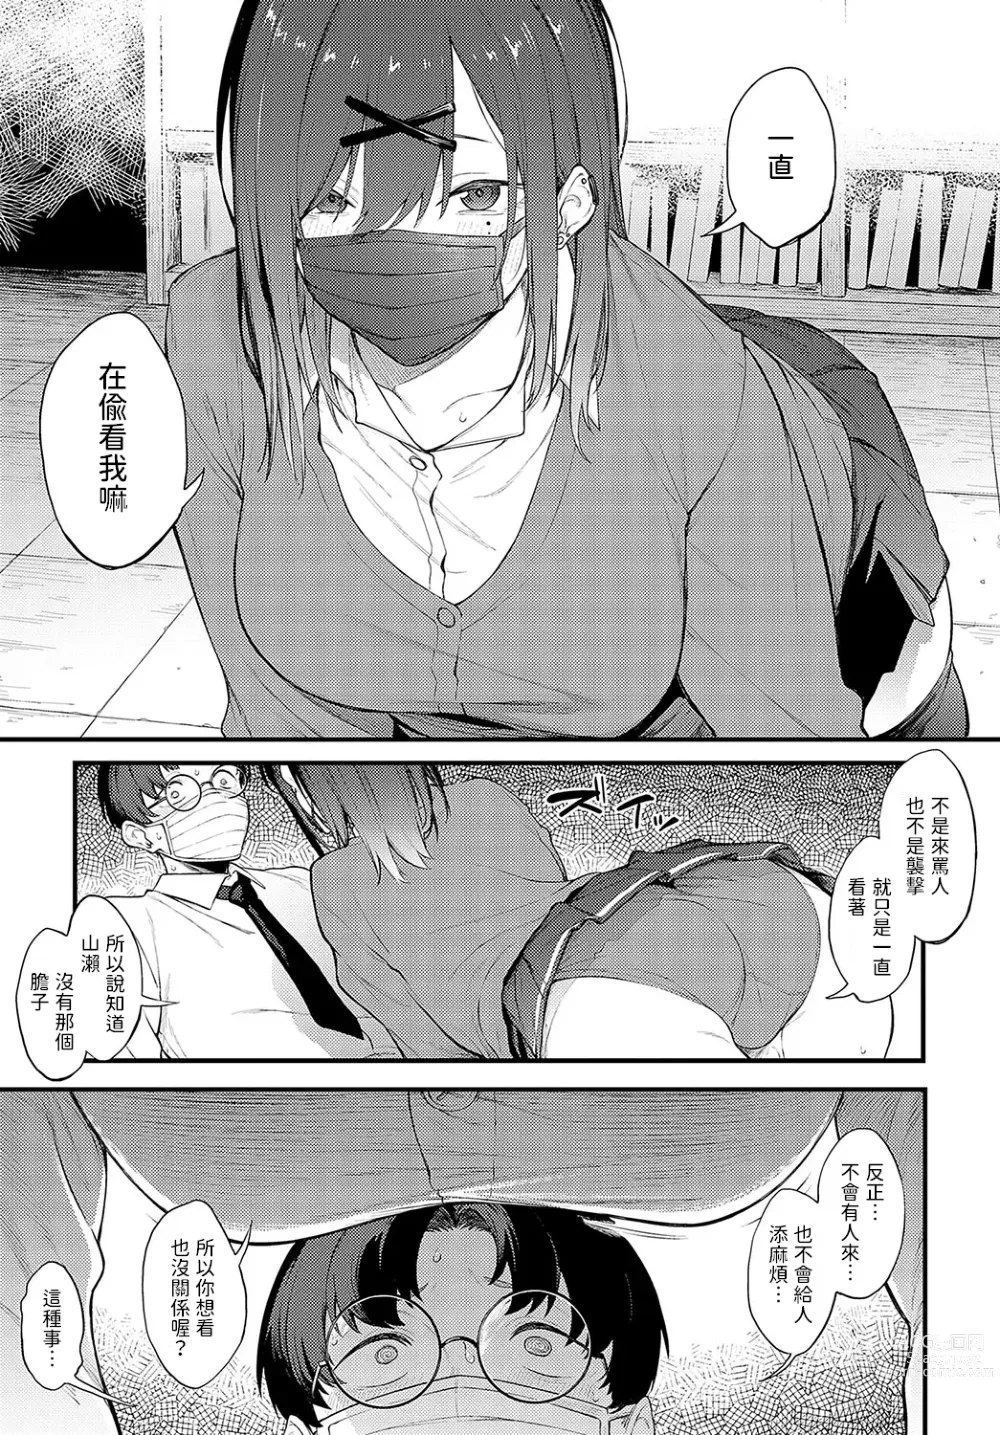 Page 7 of manga Tana no Mukou, Nuno no Mukou